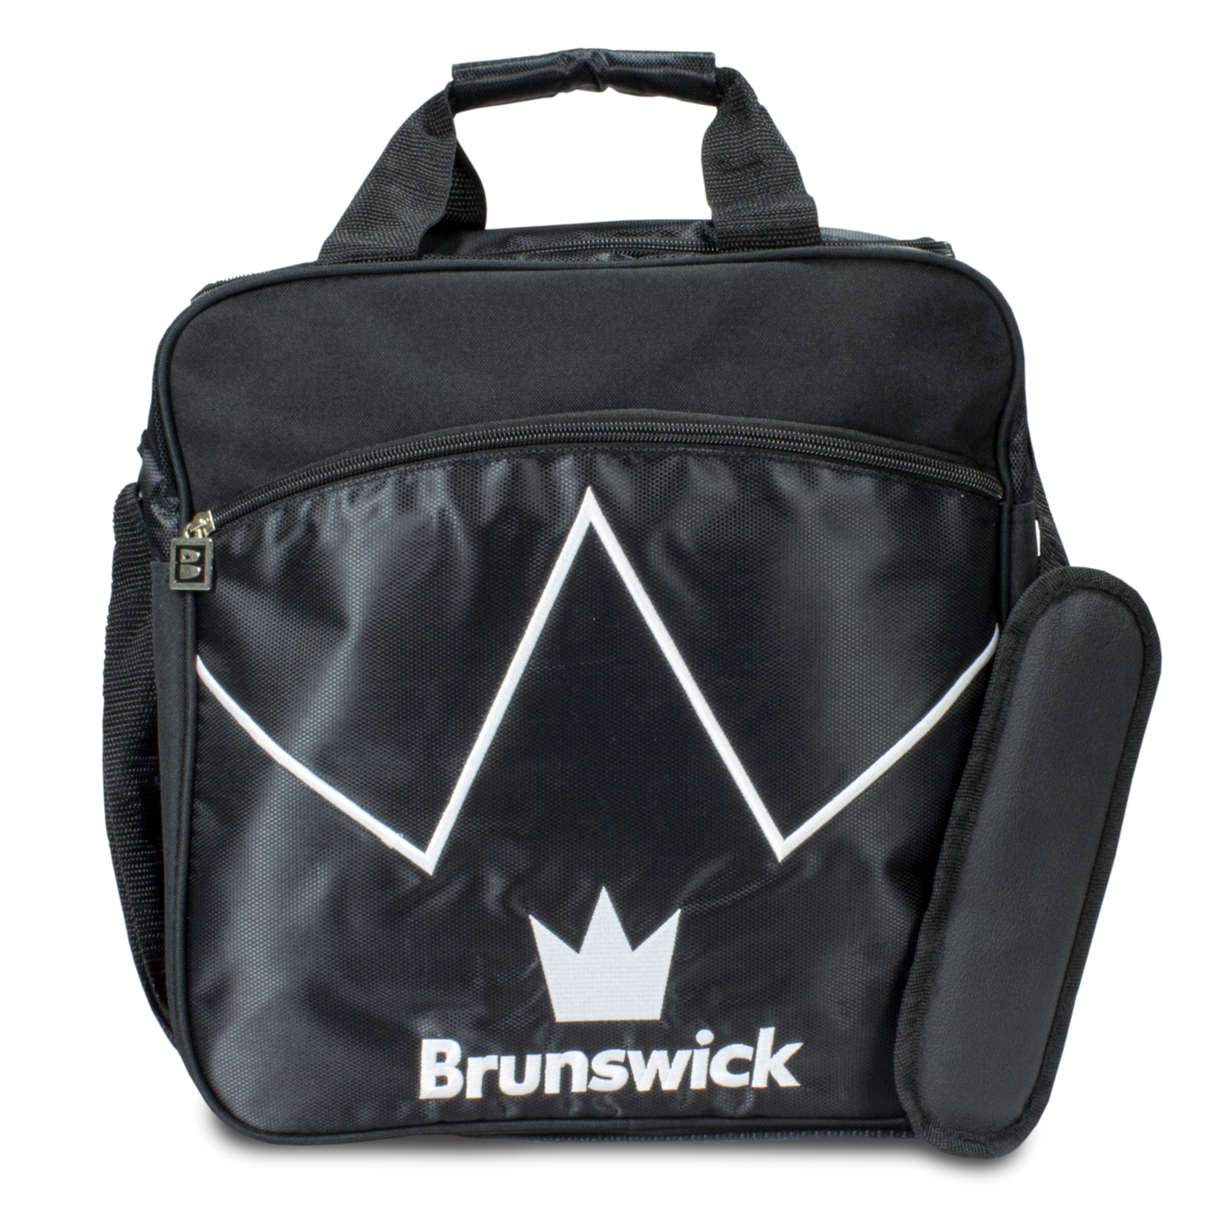 brunswick single ball tote black blitz bowling bag travel suitcase league tournament play sale discount coupon online pba tour